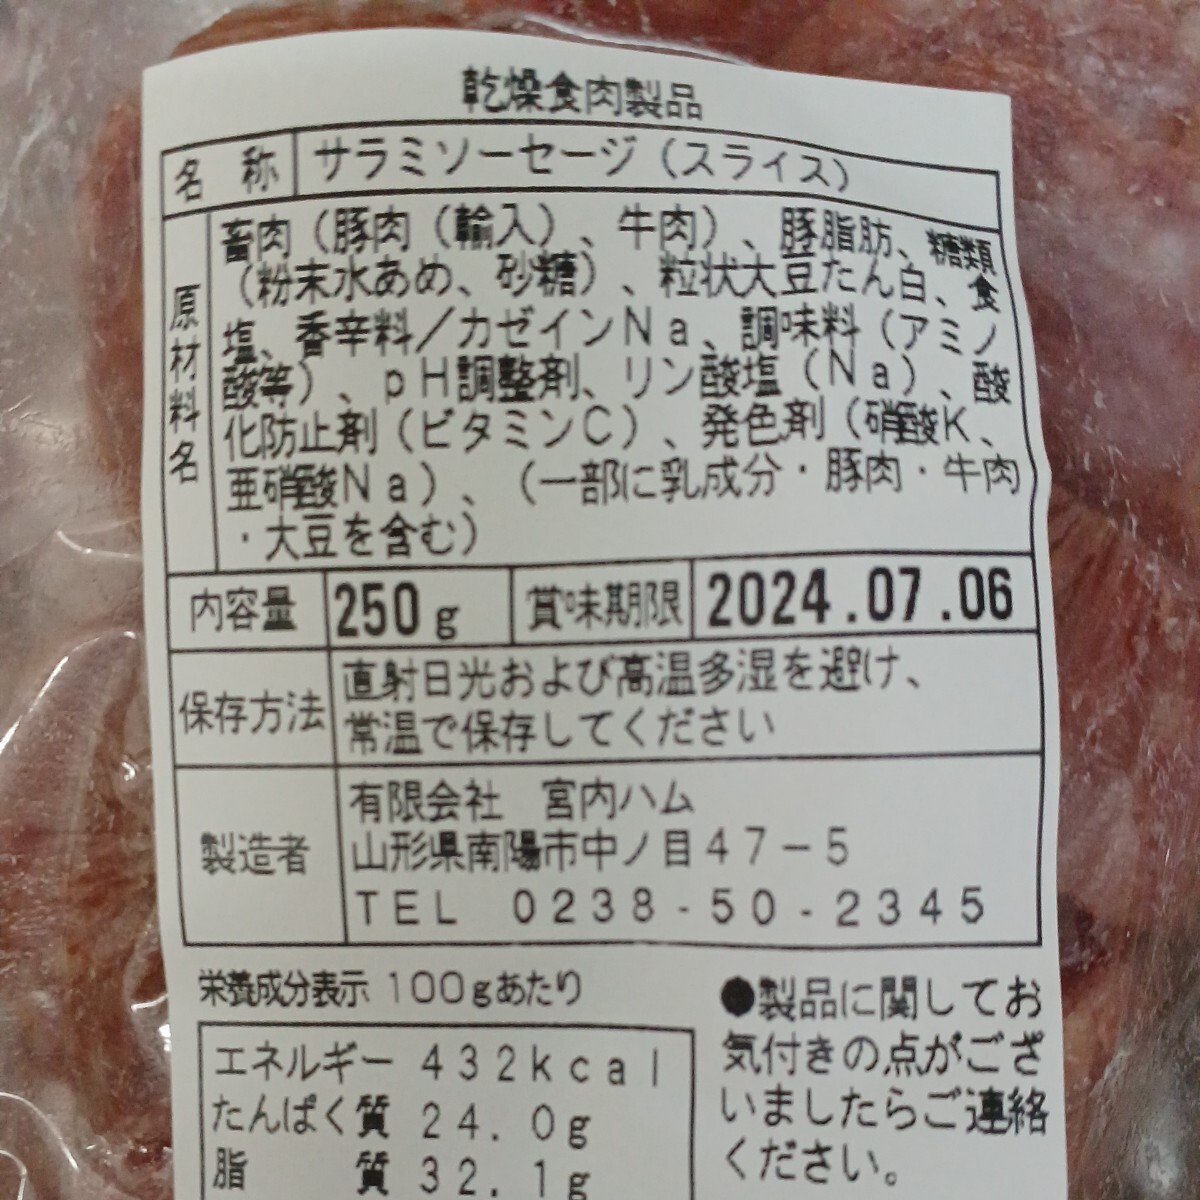 . внутри ветчина ломтик 250g×2 пакет ломтик салями ... пик Yamagata. тест .... Yamagata очень редкий ограниченное количество товар высококлассный 